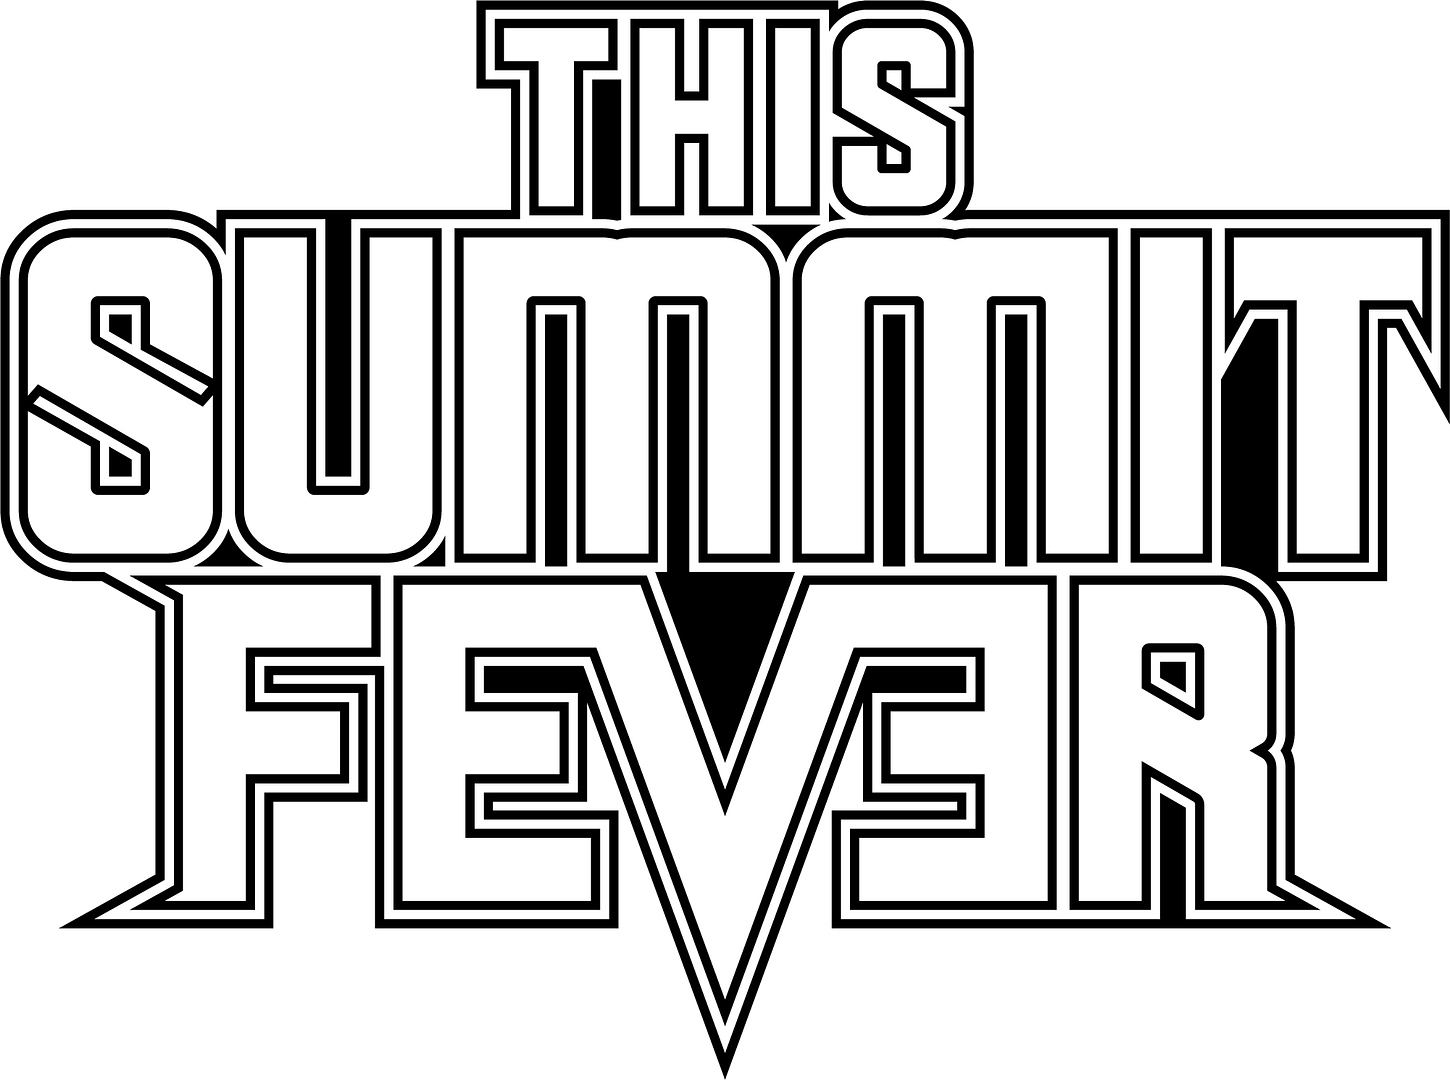 This Summit Fever logo white text - black border